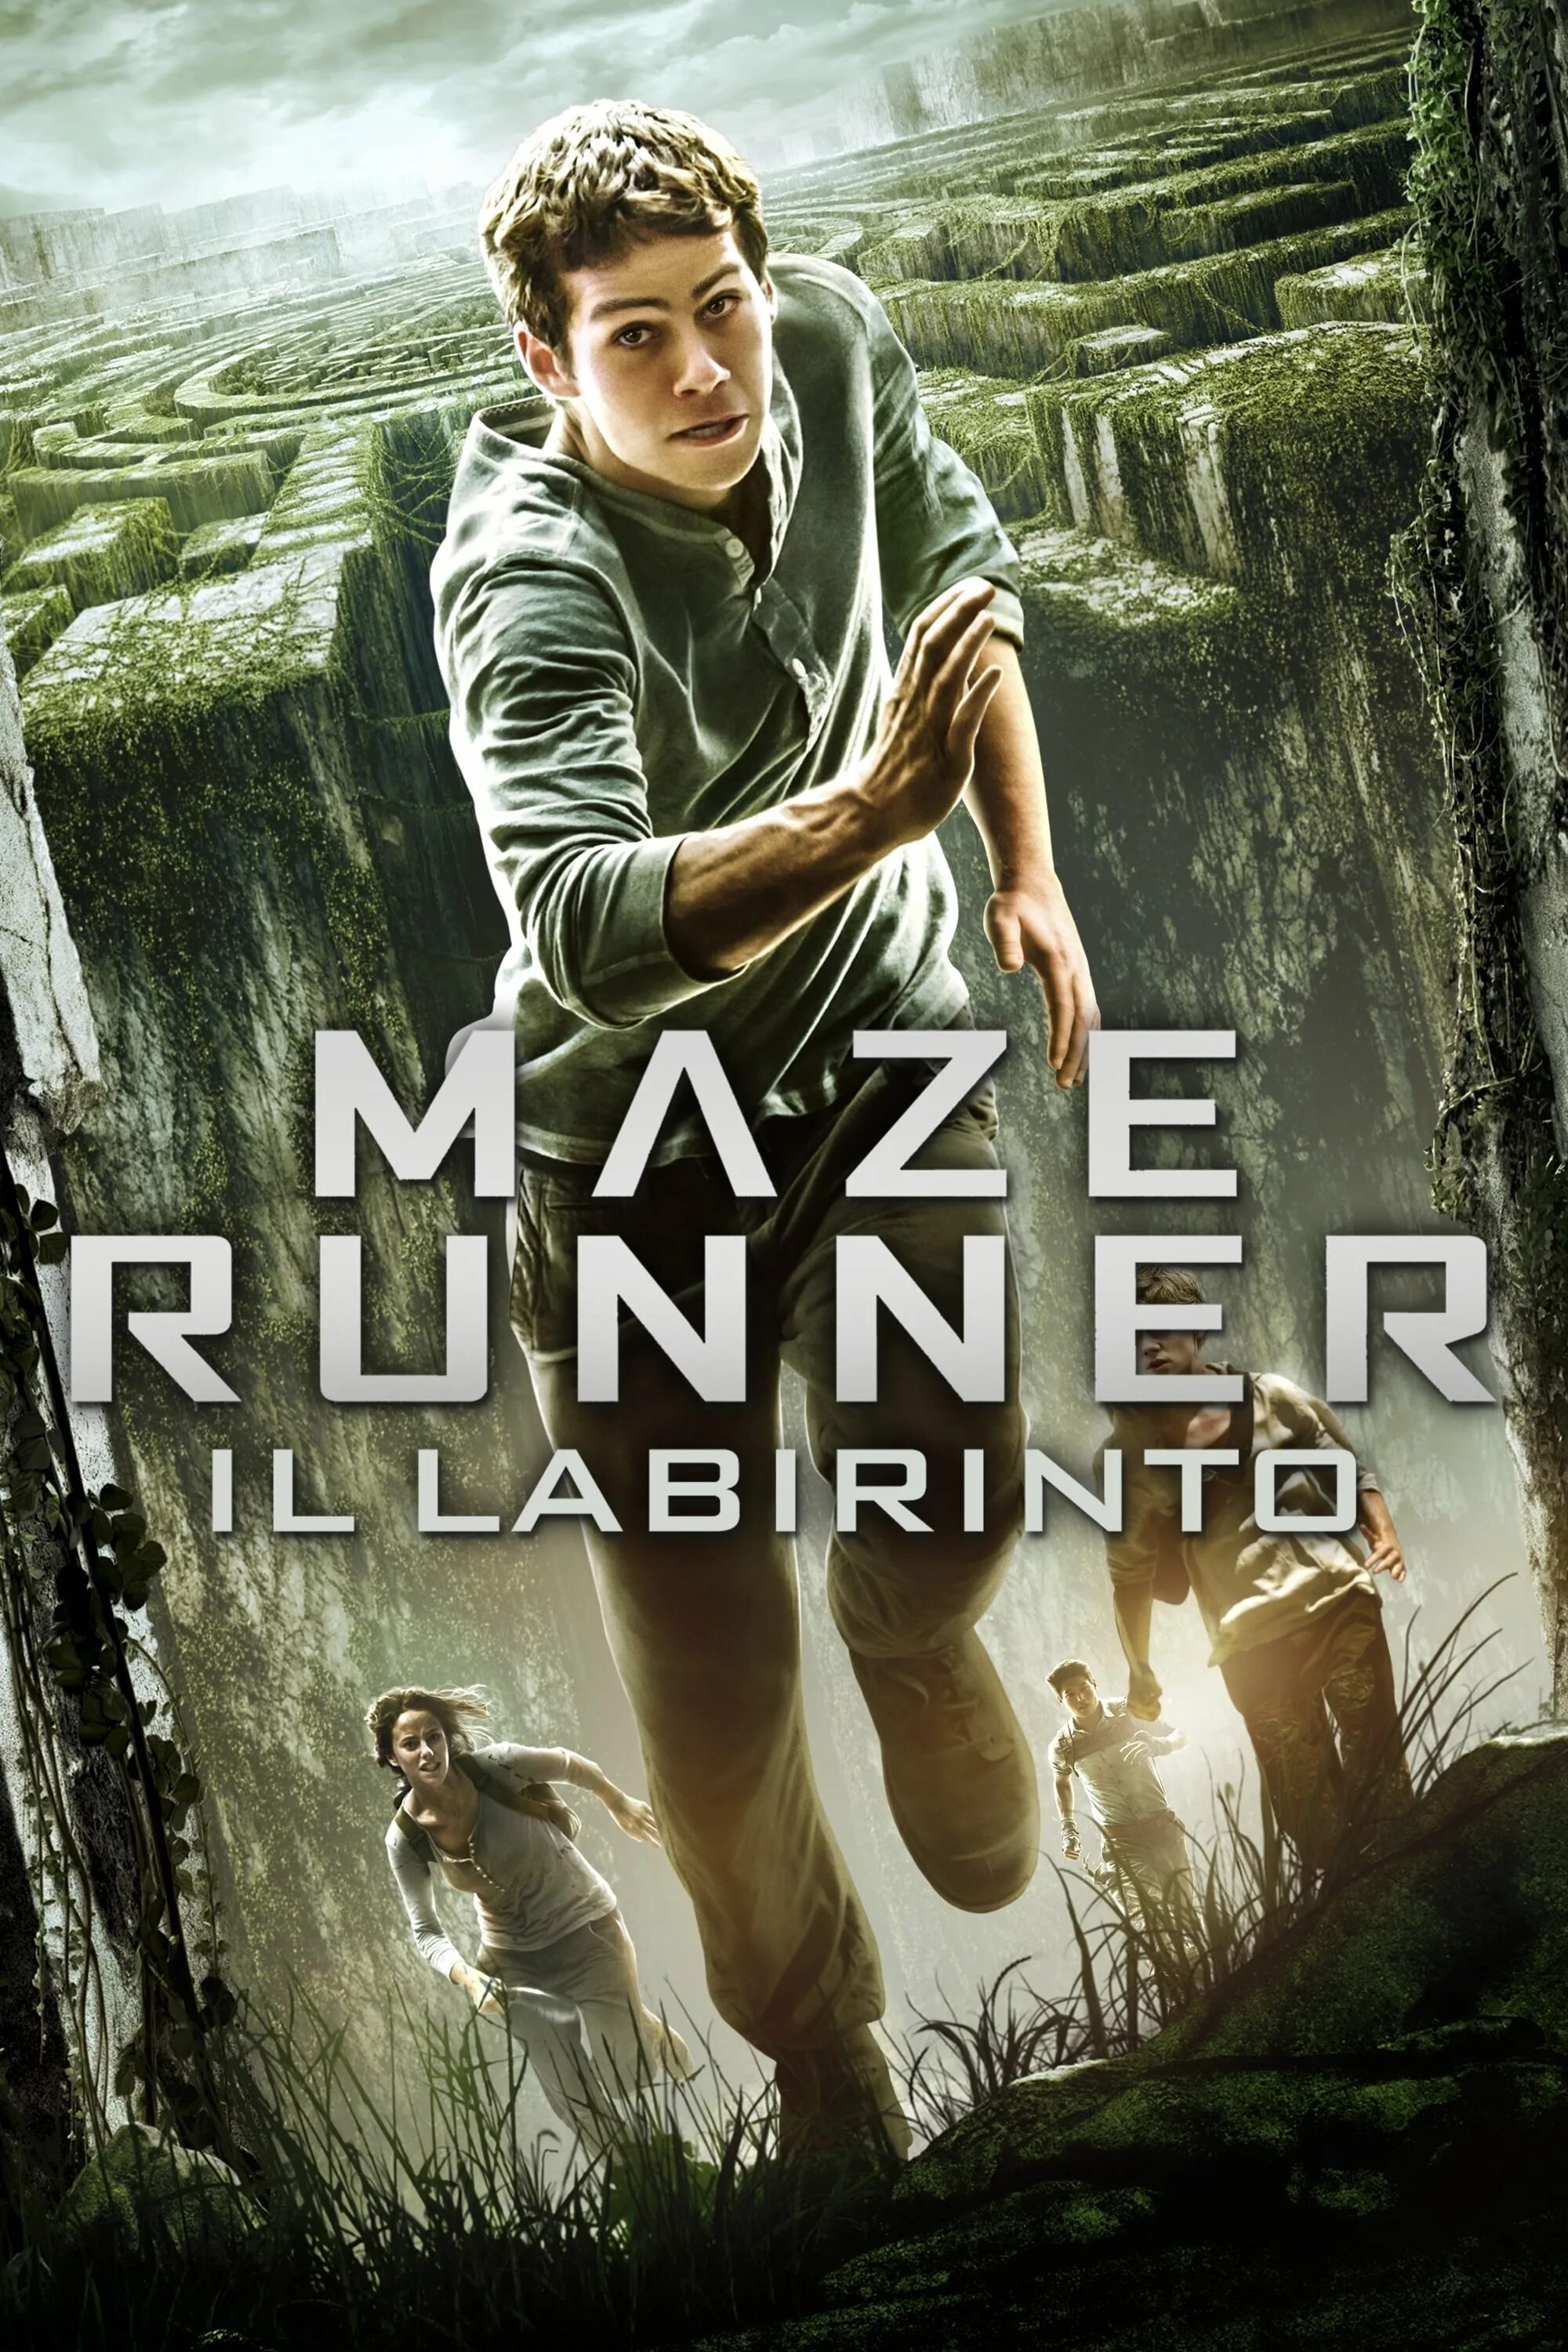 The Maze Runner (2014) Постер. Бегущий в лабиринте 2014 Постер. Бегущий в лабиринте 1. Сбежать на английском